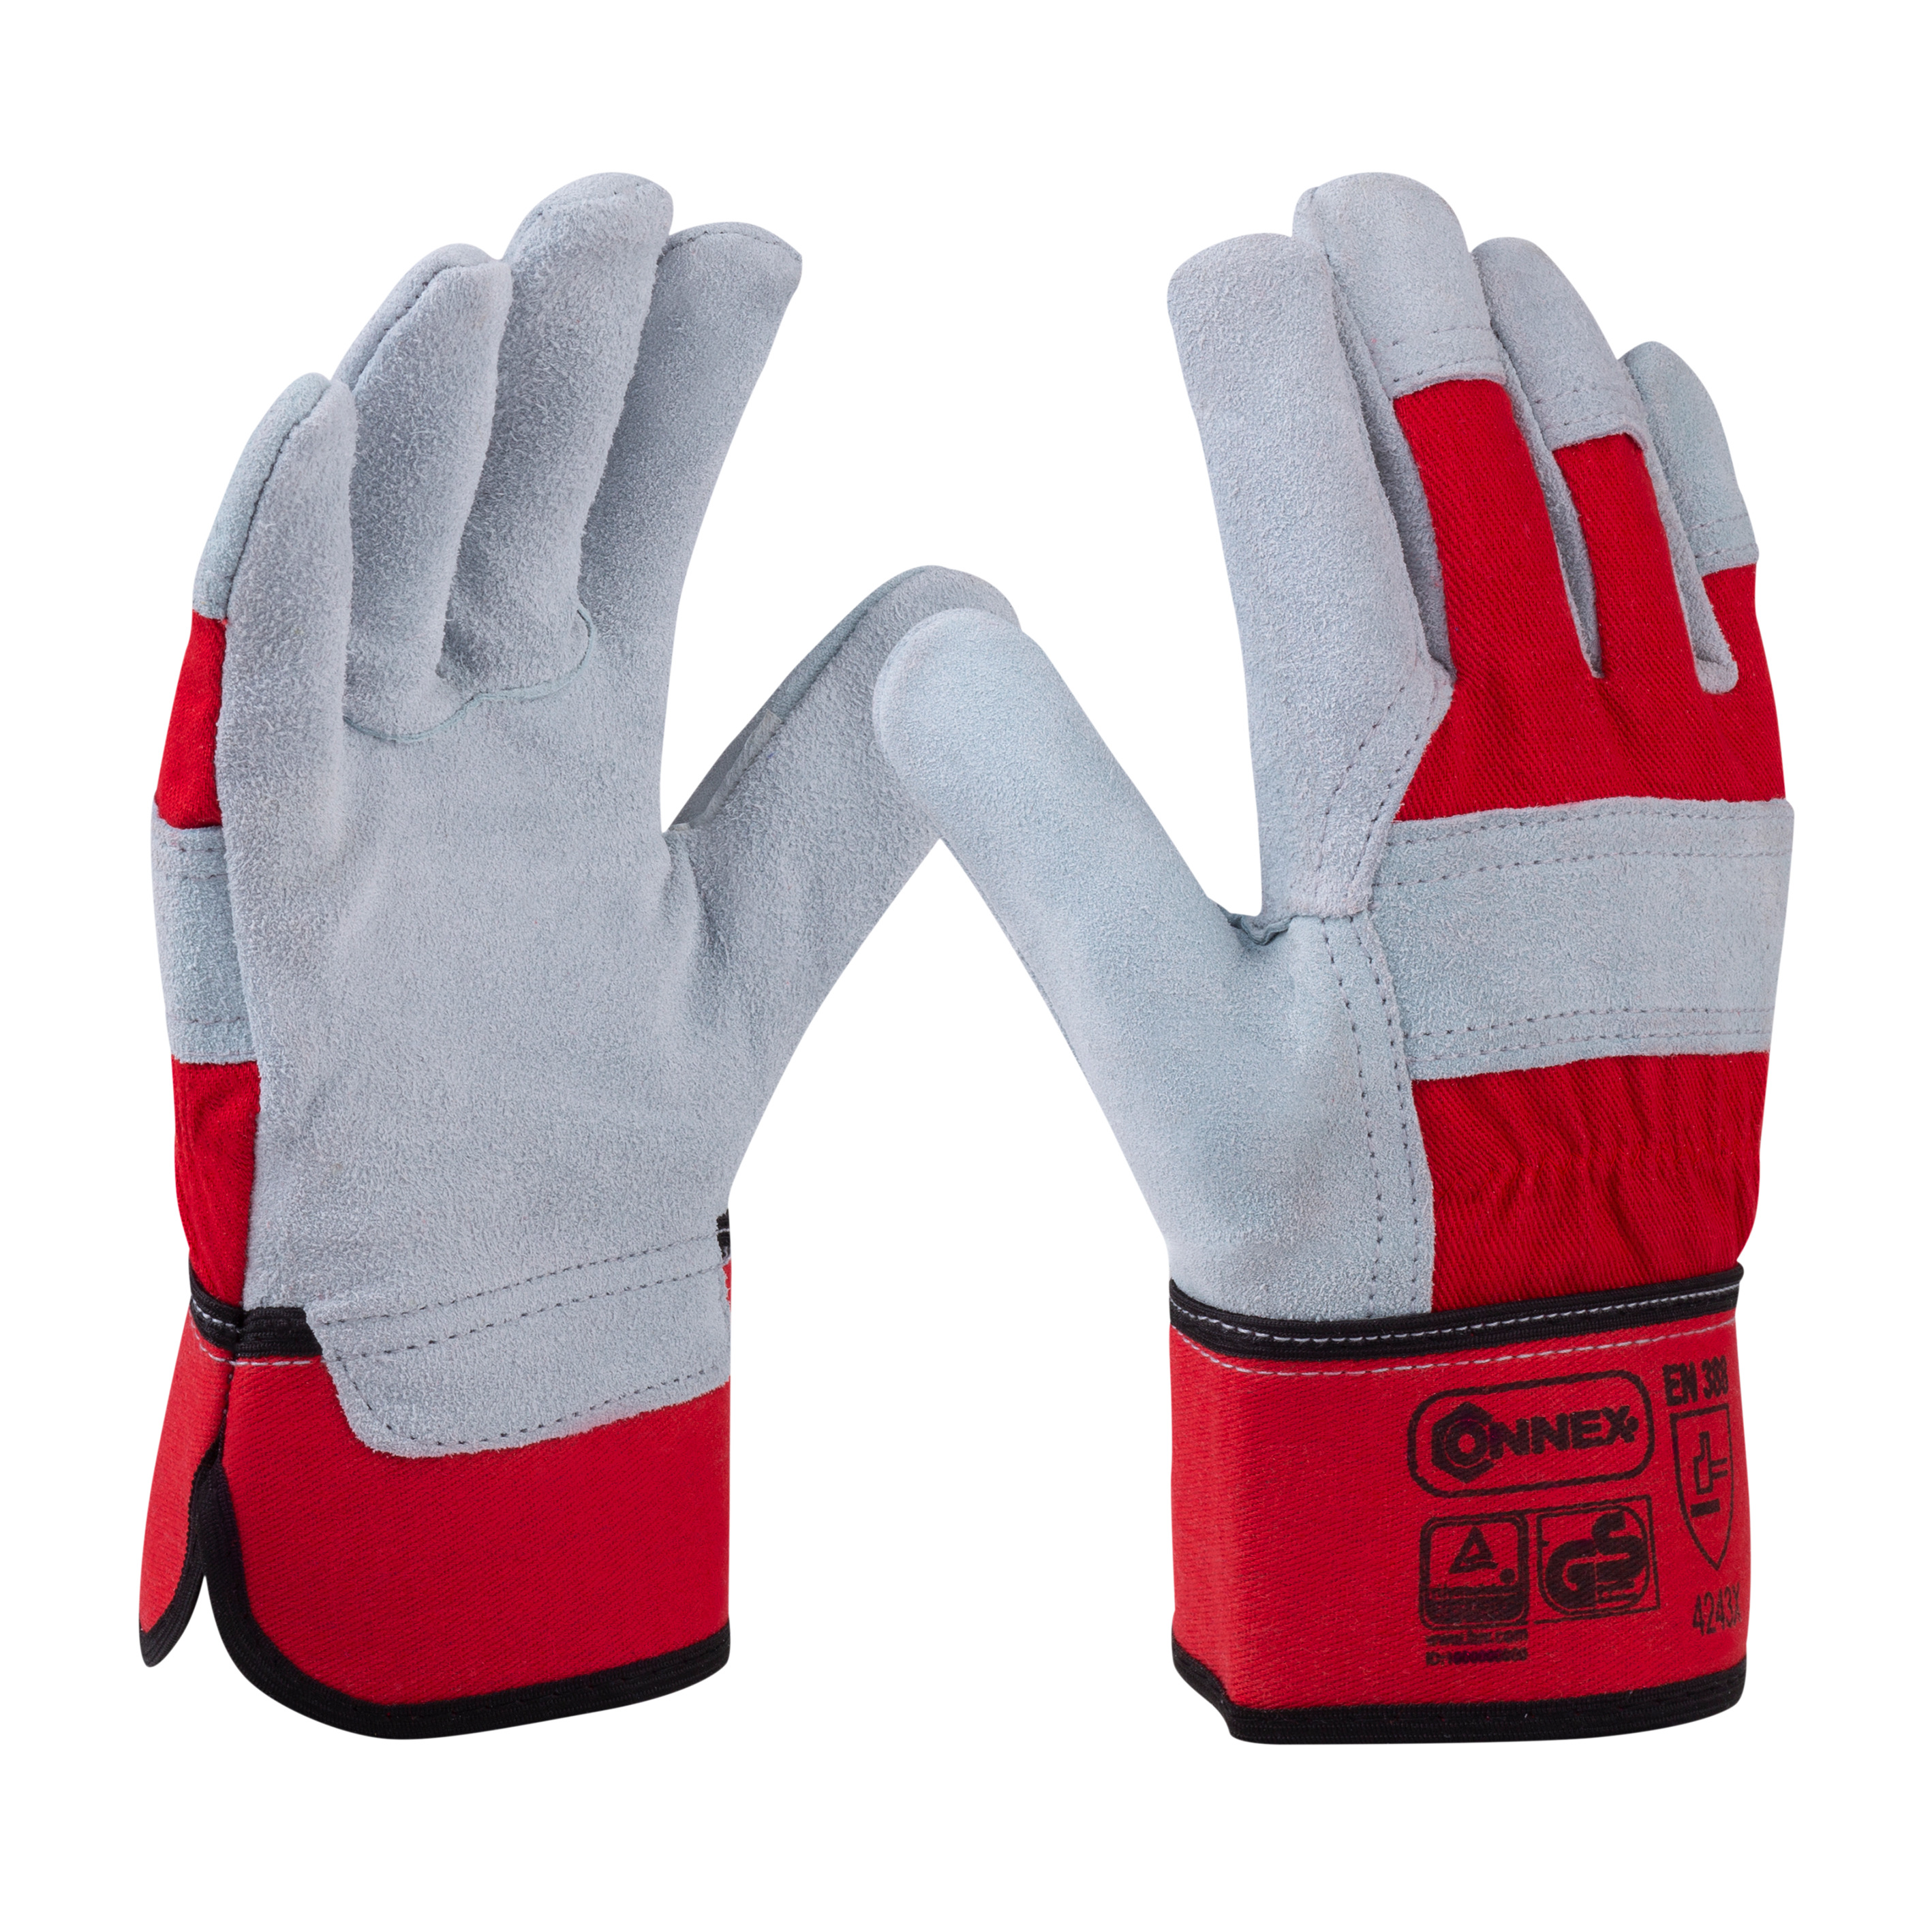 CONMETALL Handschuhe Leder Gr. 6 